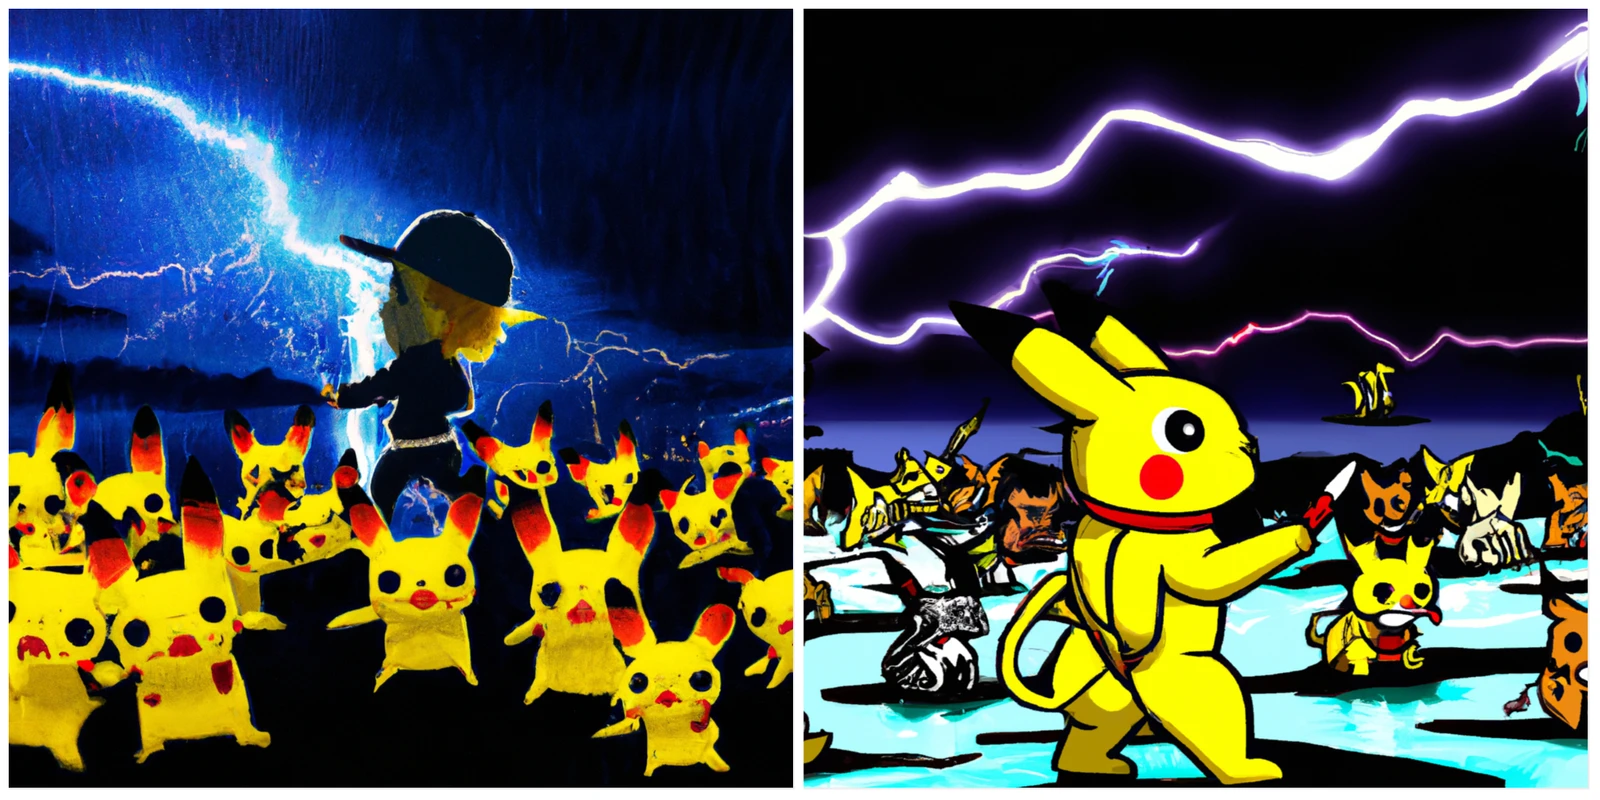 Imágenes generadas por DALL-E que muestran a un niño con sombrero y a una multitud de Pikachus amarillos bajo un cielo oscuro lleno de relámpagos. 